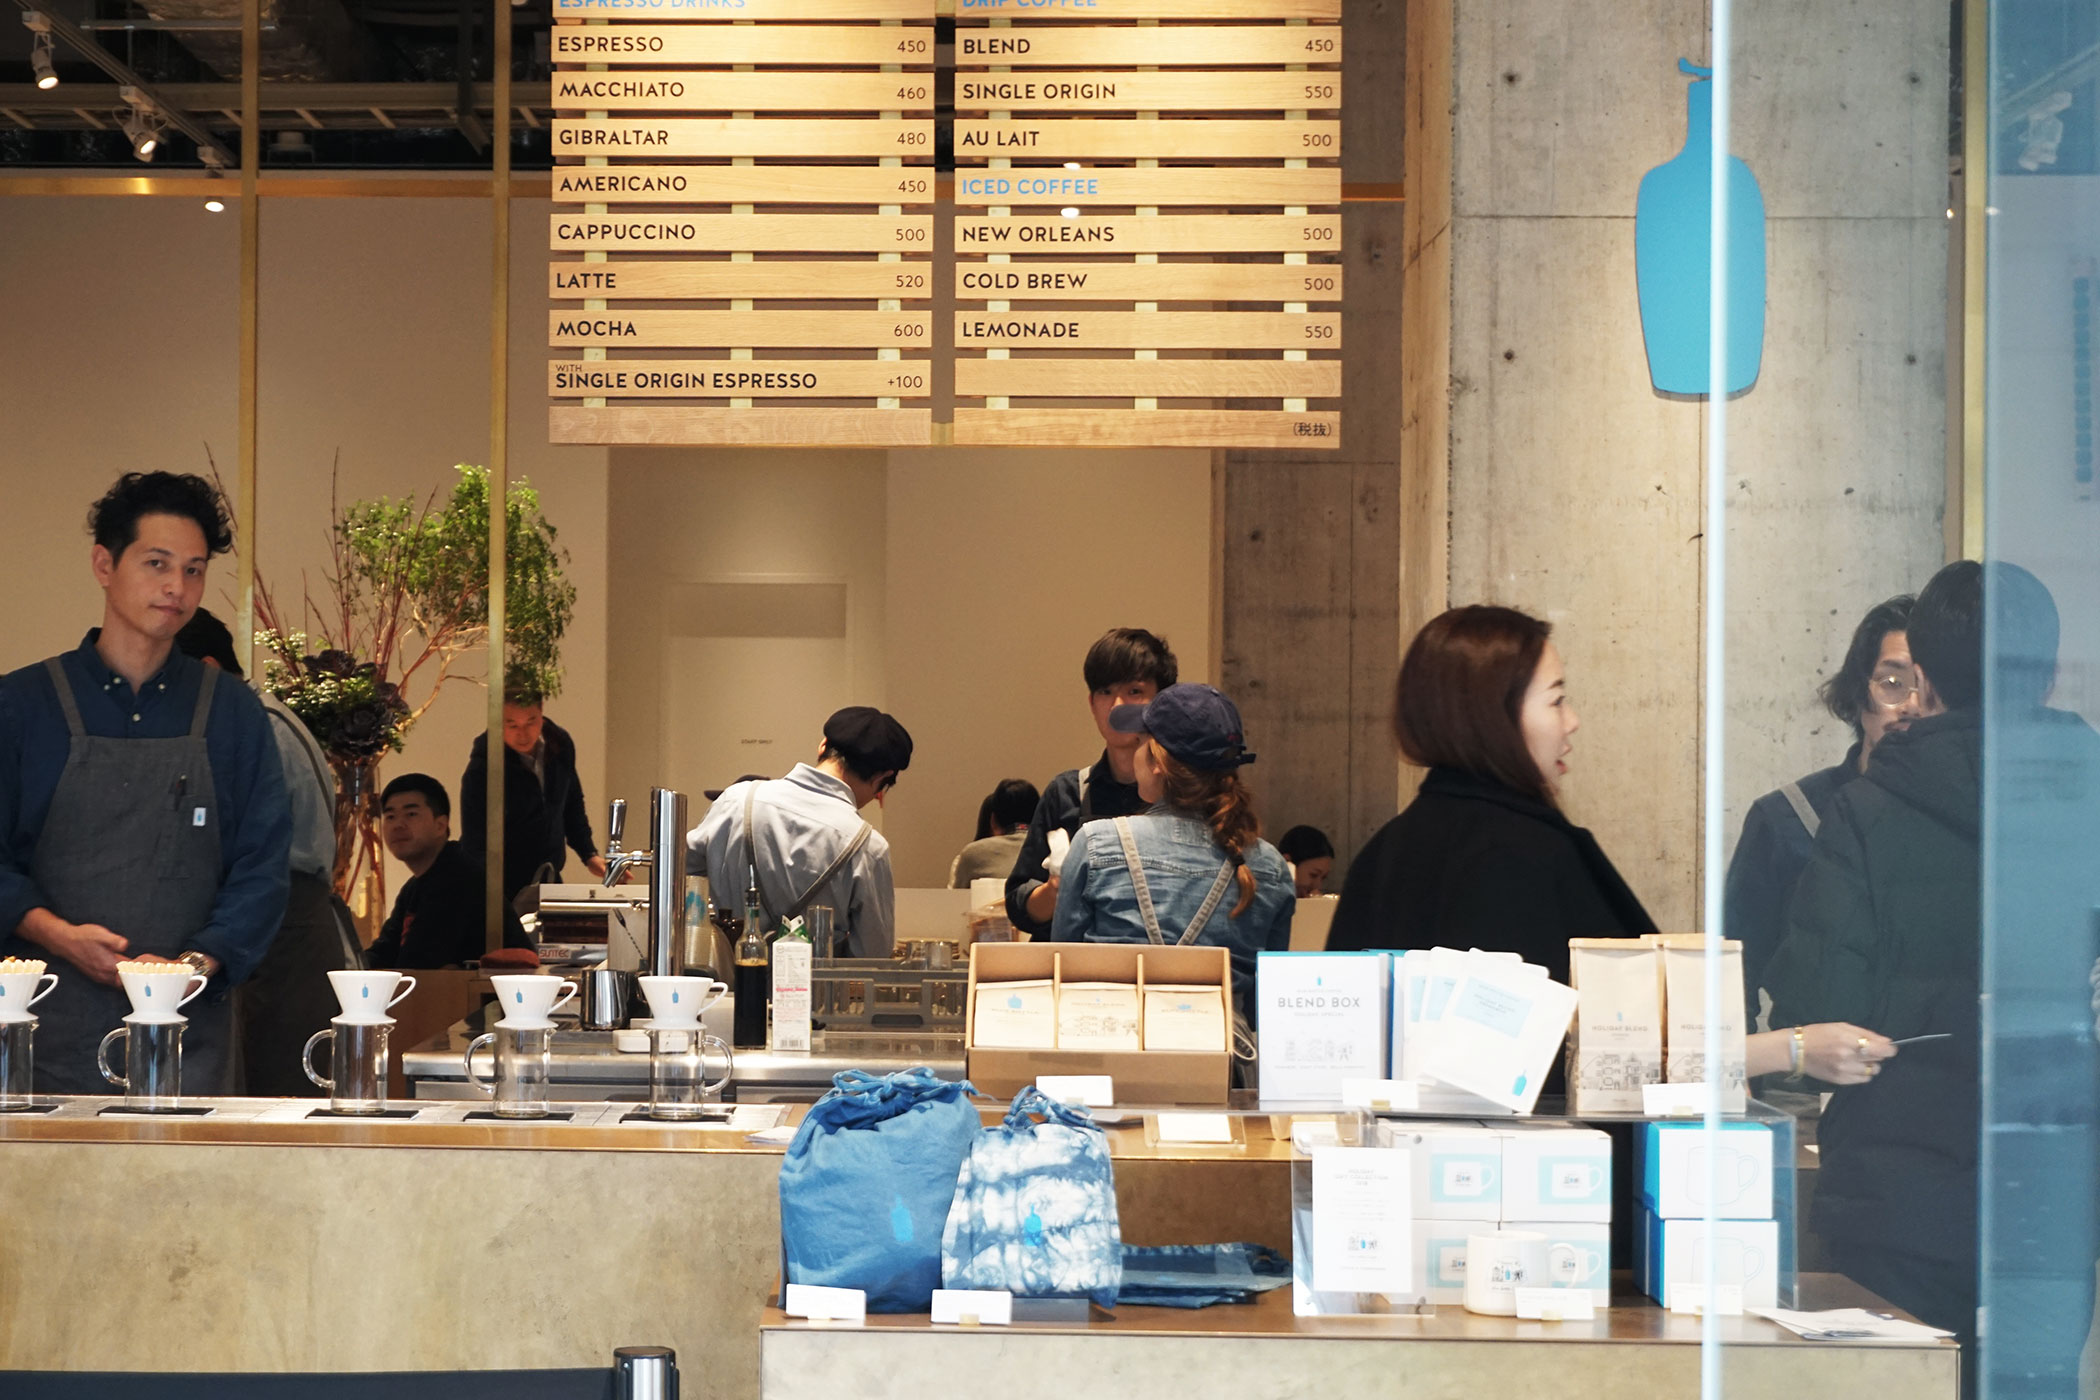 ブルーボトルコーヒー 神戸カフェ (BLUE BOTTLE COFFEE) 関西2店舗目は開放的なショップがよく似合う神戸の街に